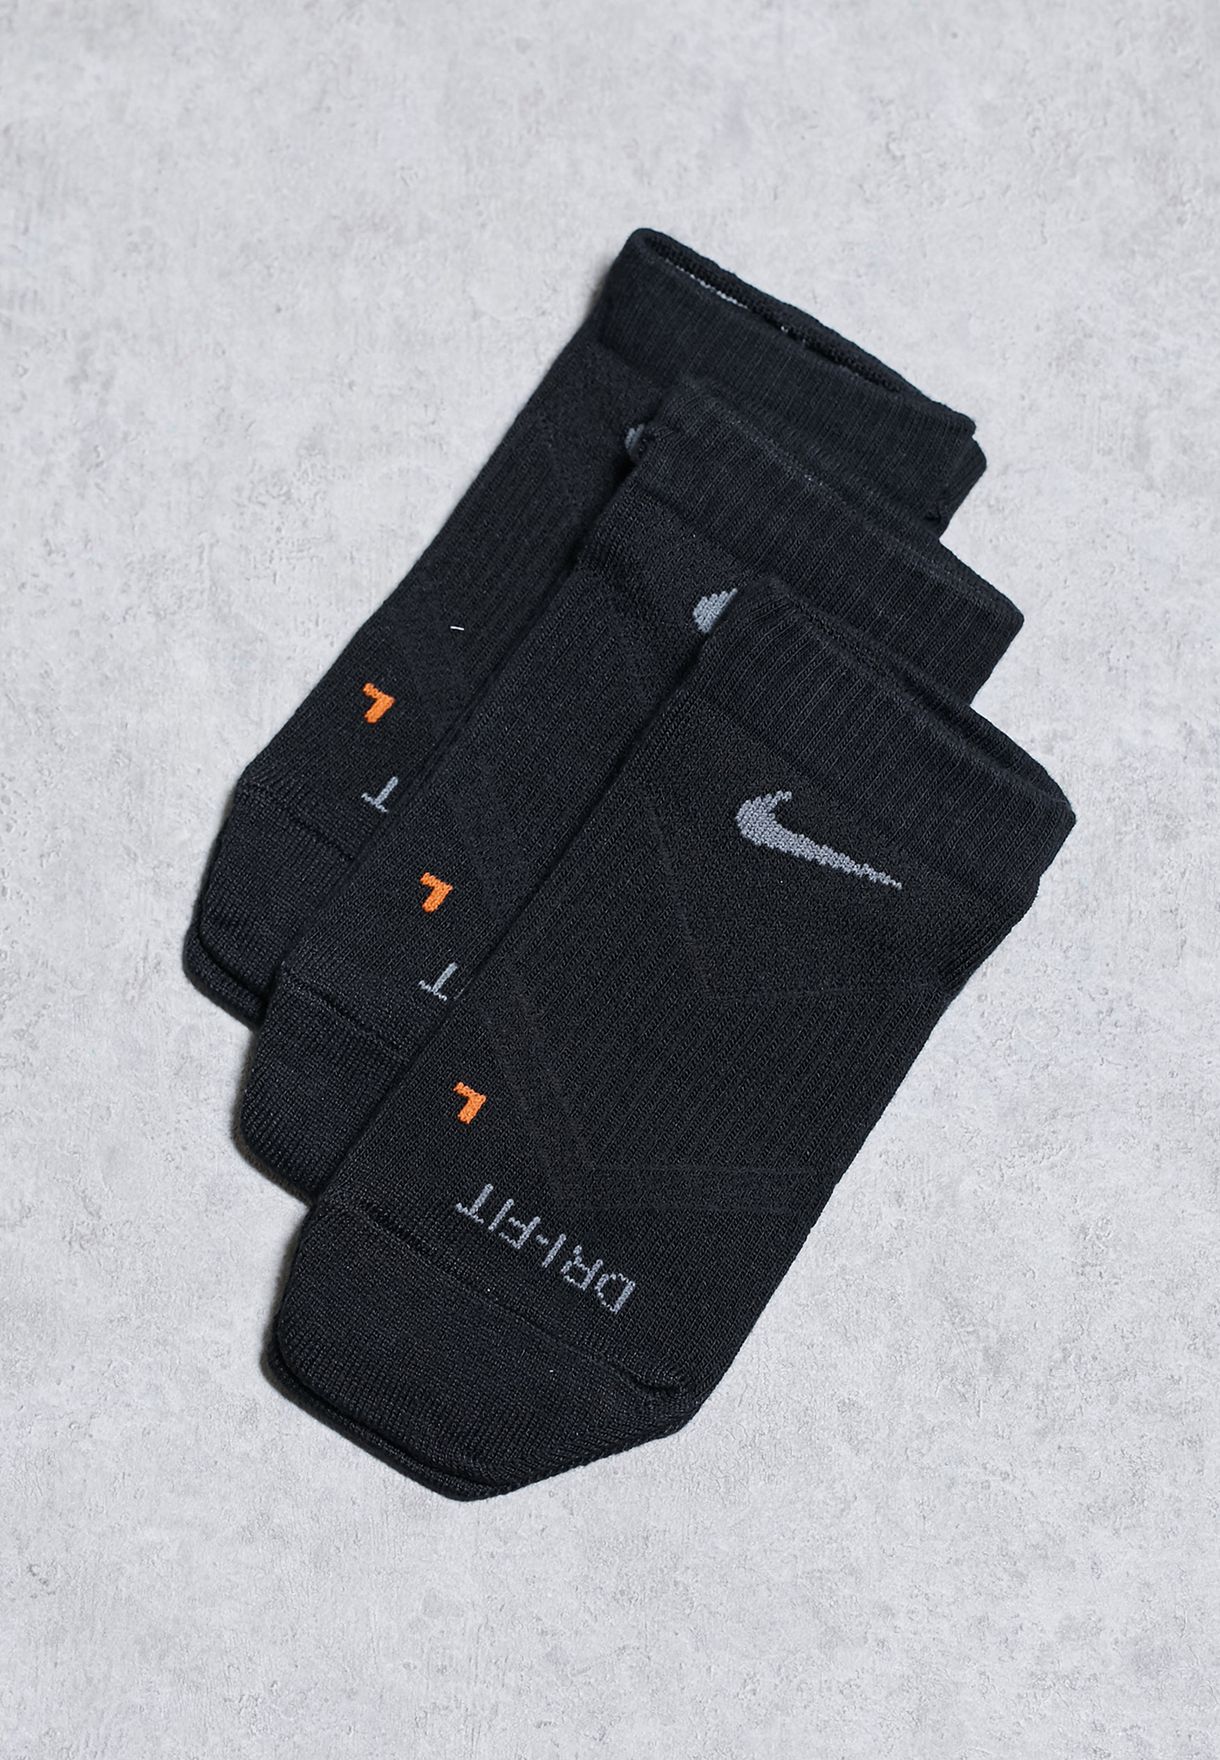 black dri fit socks